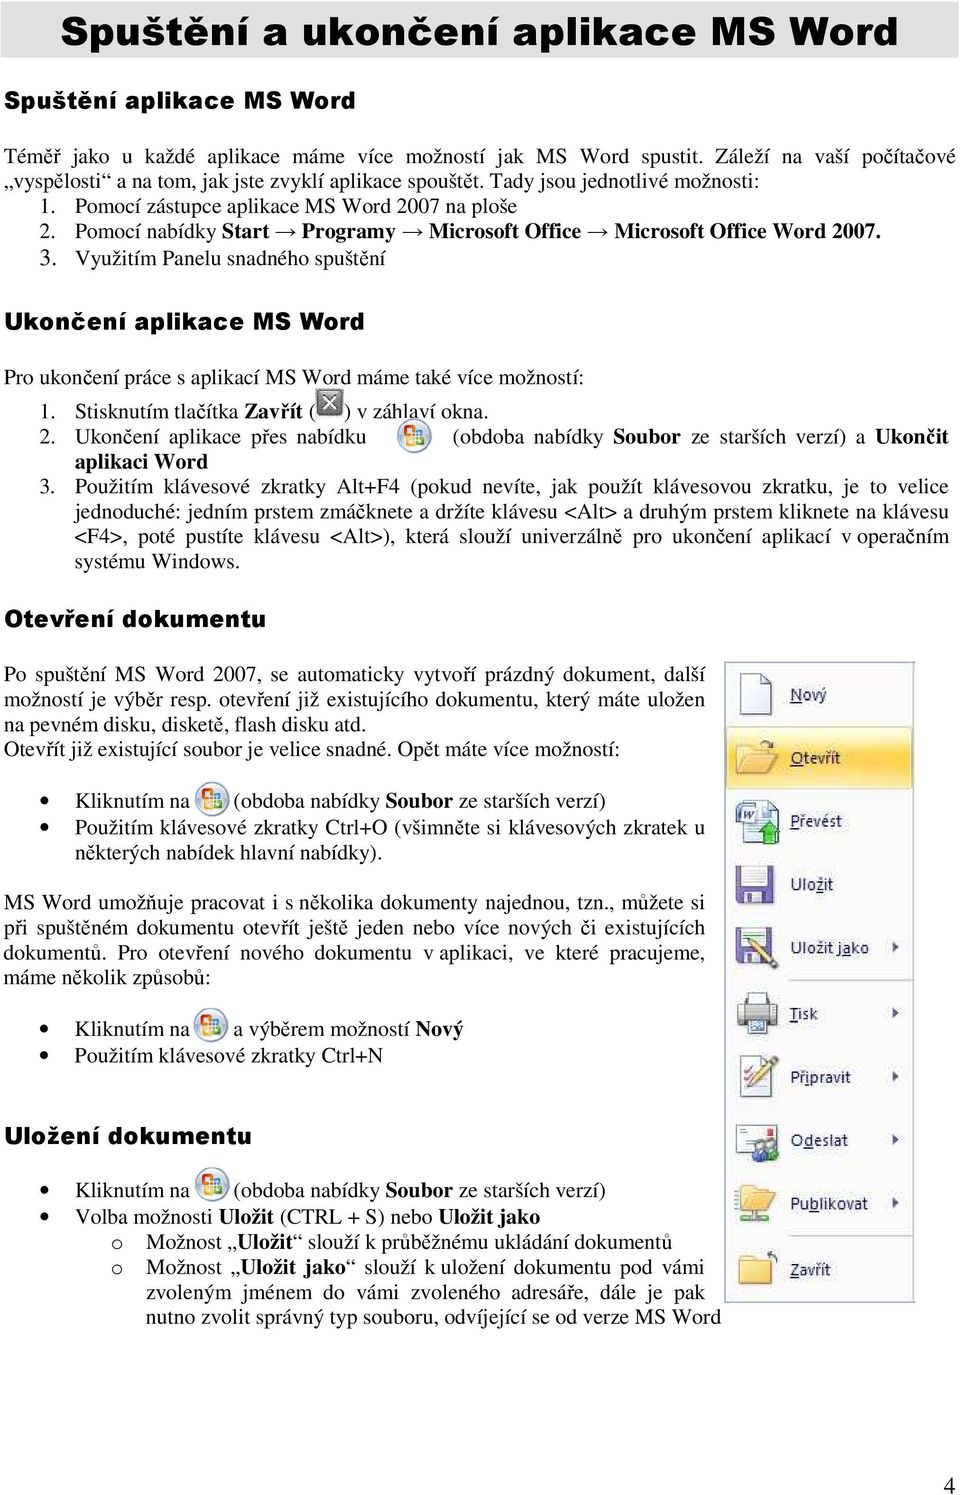 Pomocí nabídky Start Programy Microsoft Office Microsoft Office Word 2007. 3.